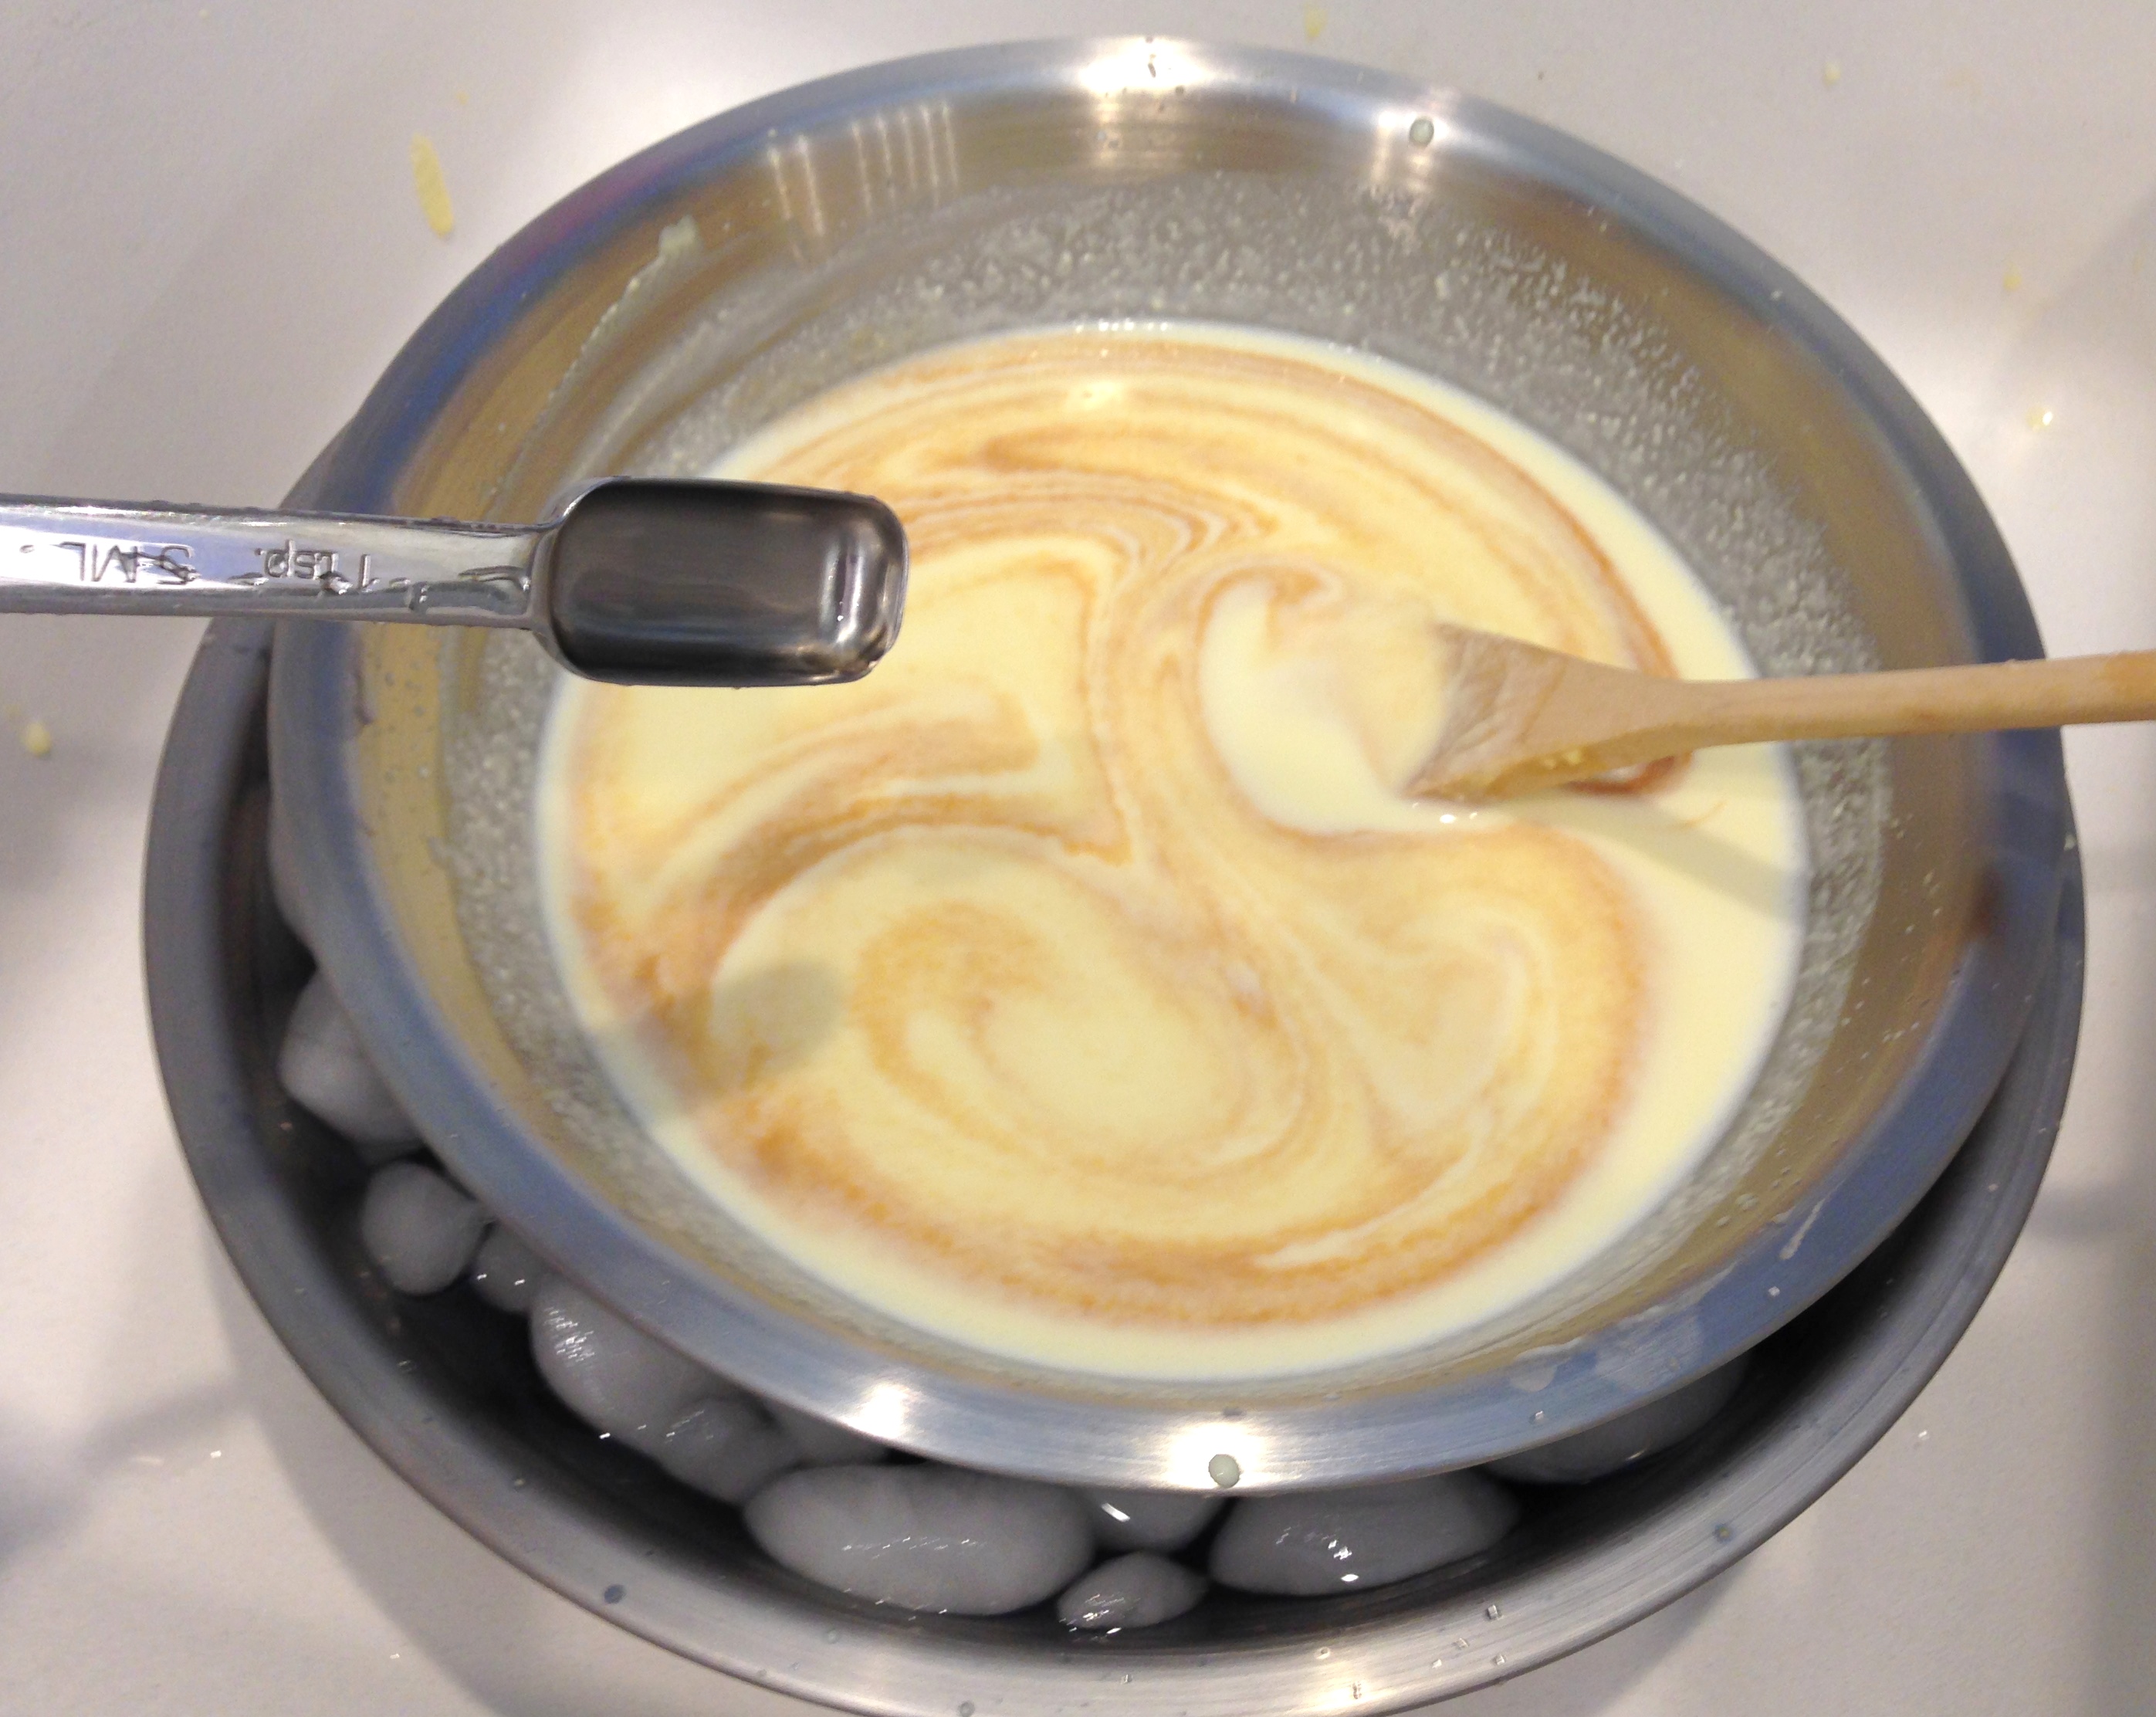 Add vanilla to custard cream